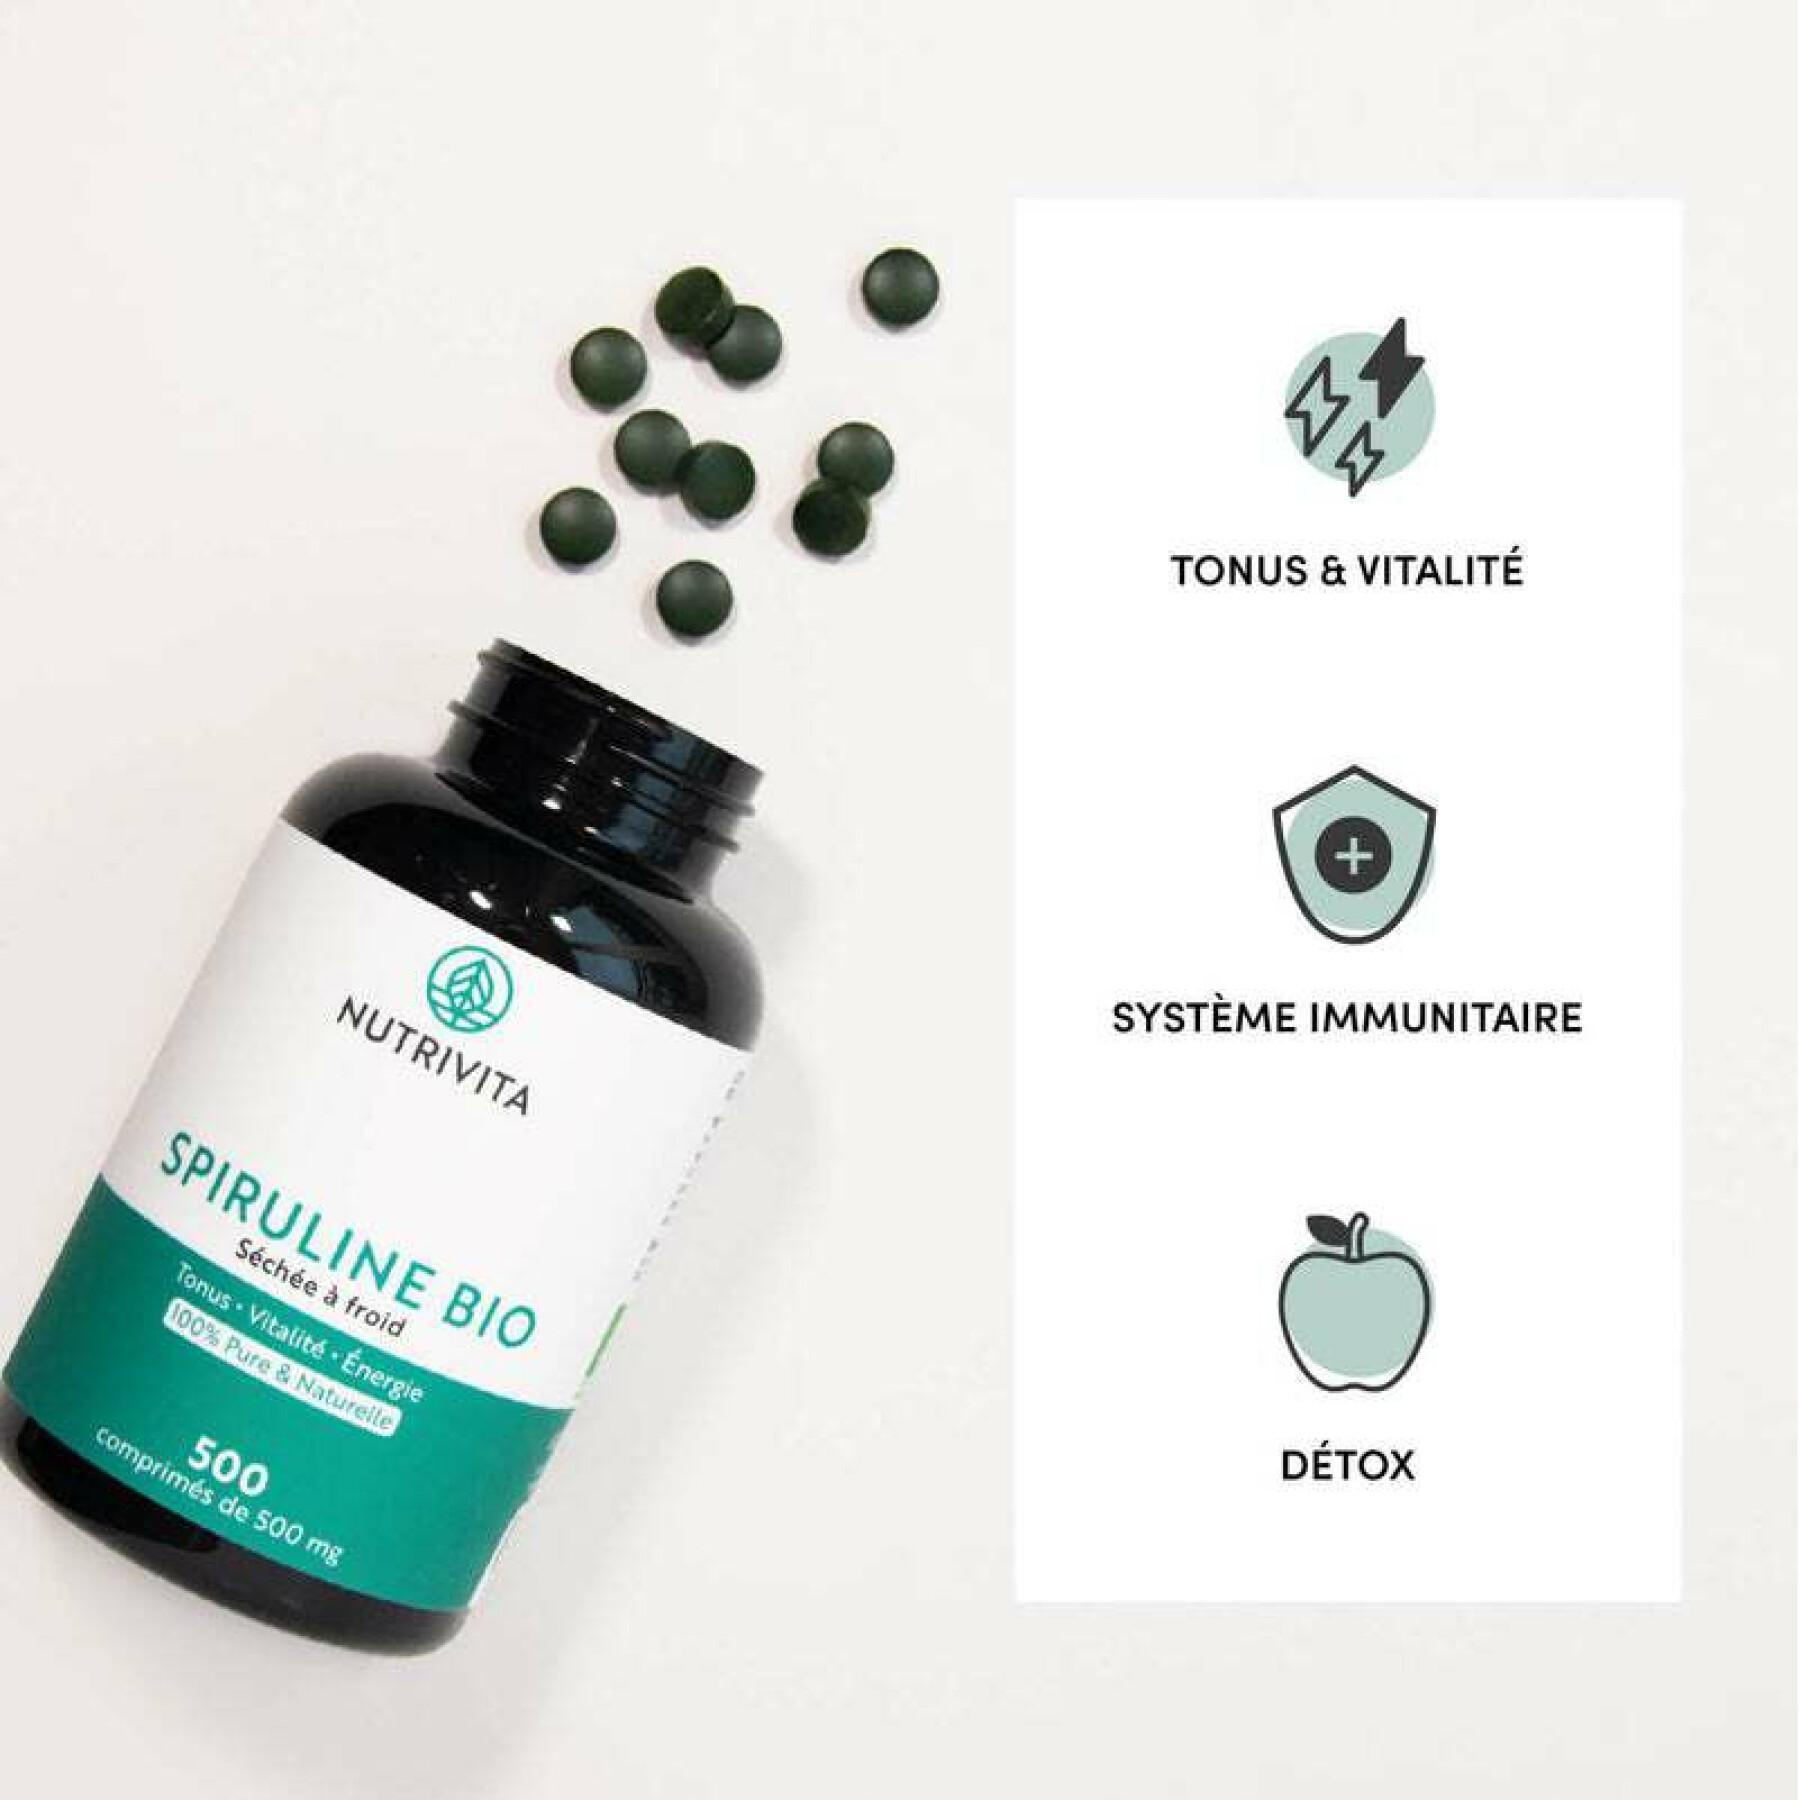 Food supplement spirulina bio - 500 tablets Nutrivita